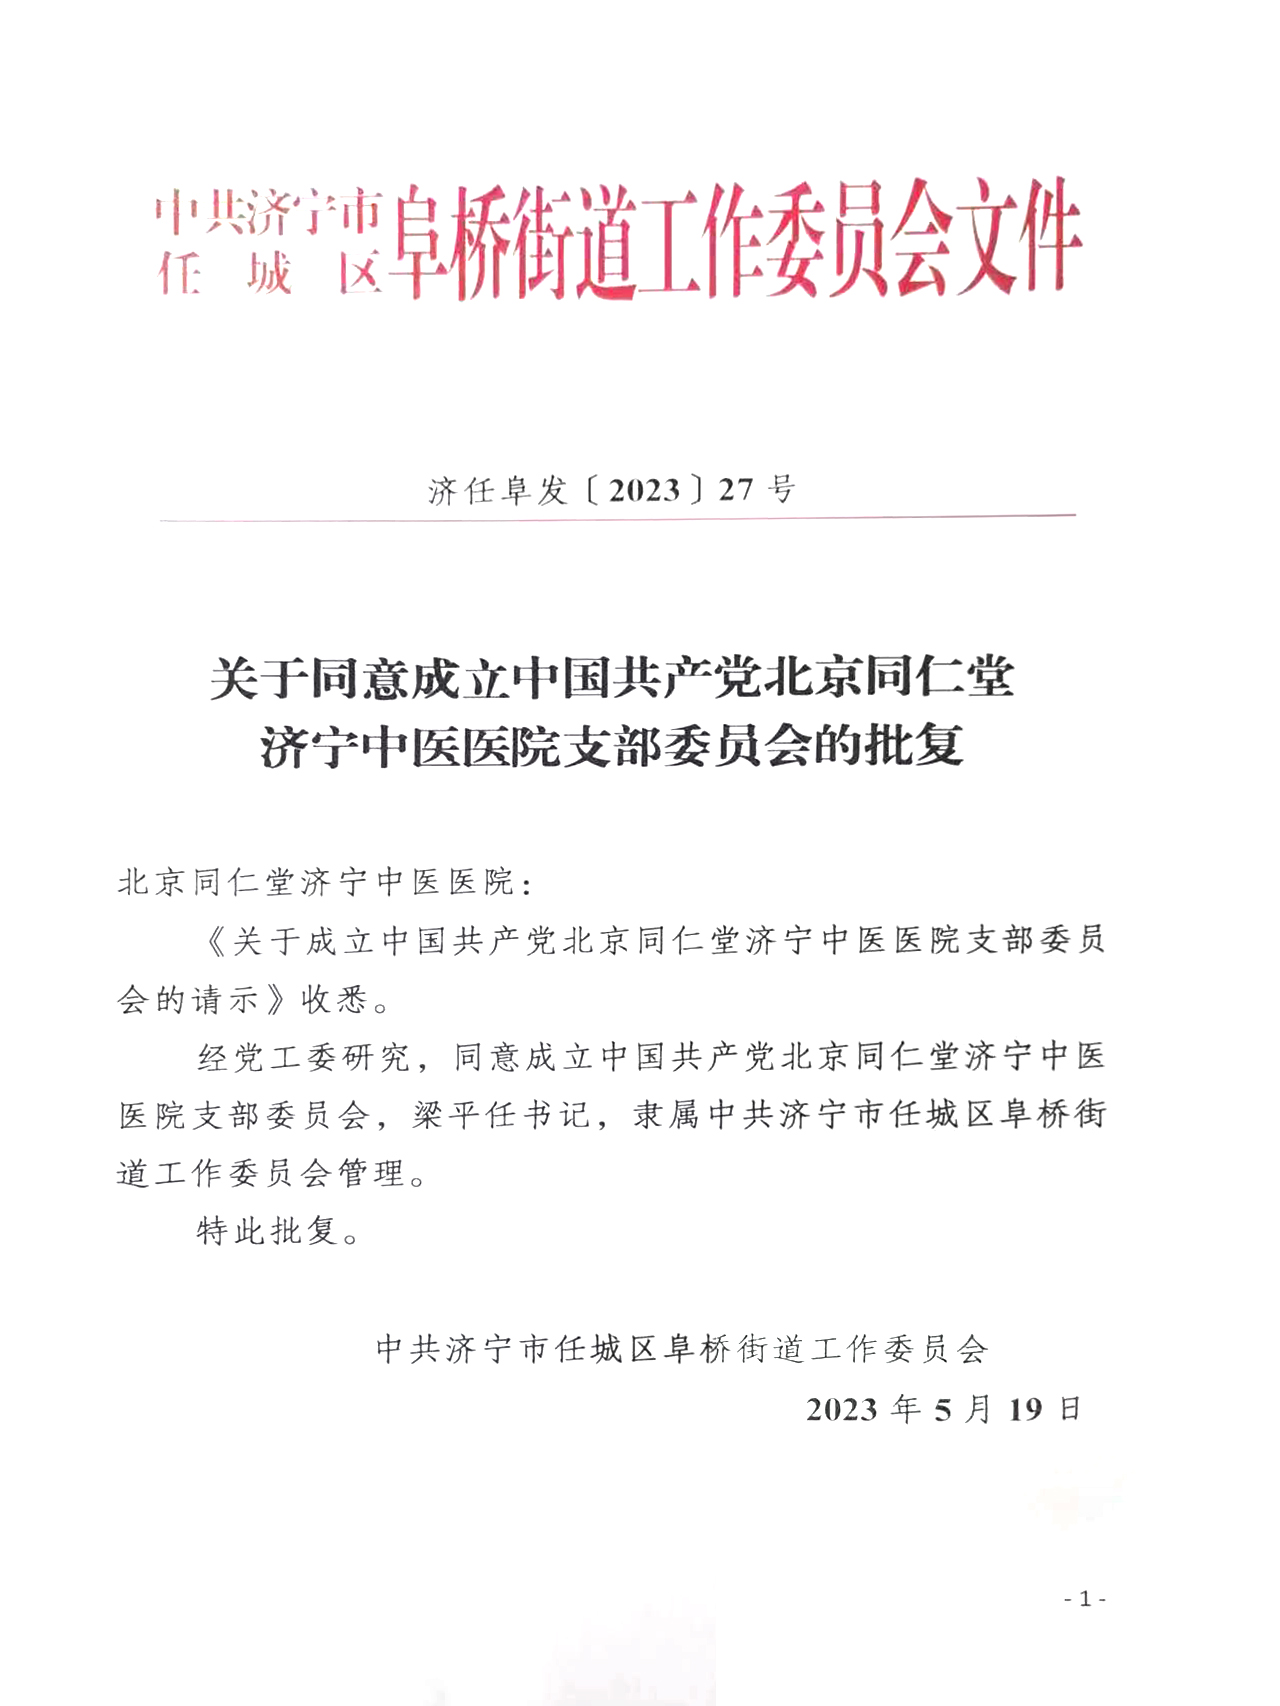 关于同意成立中国共产党北京同仁堂济宁中医医院支部委员会的批复